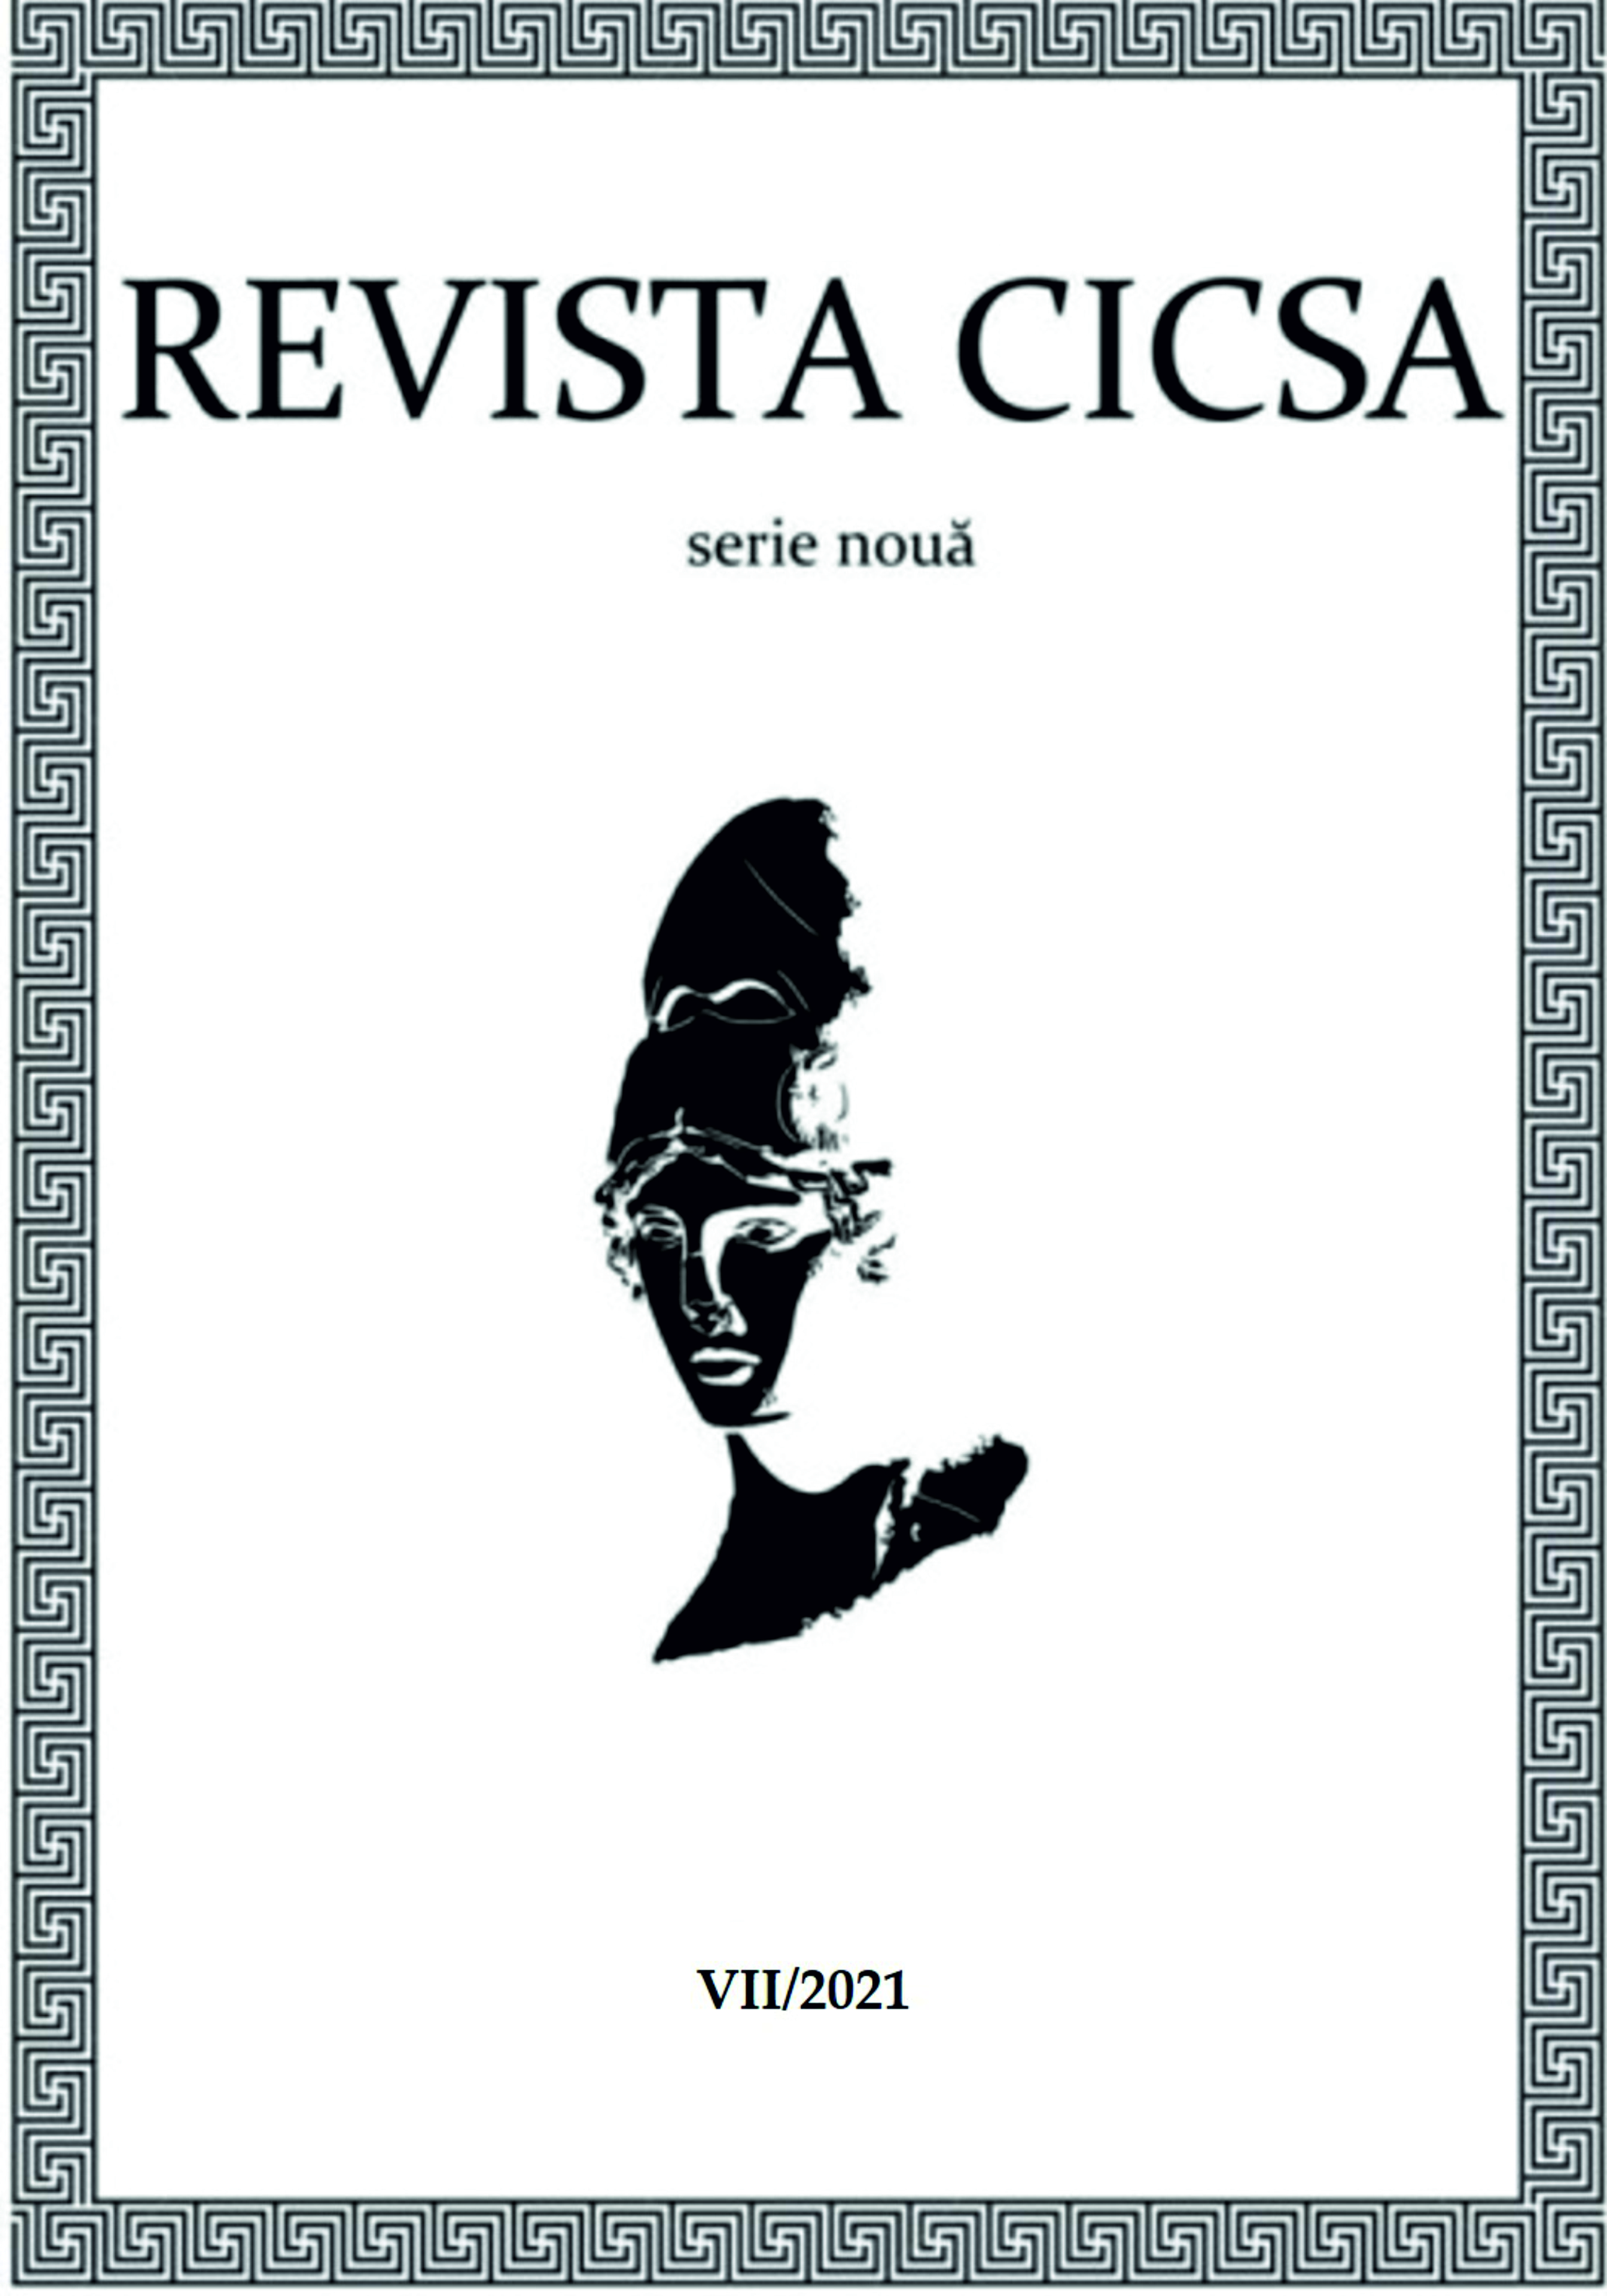 Archives and knowledge, 2020, București, Editura Universității din București, 355 p., ISBN: 978-606-16-1198-0 Cover Image